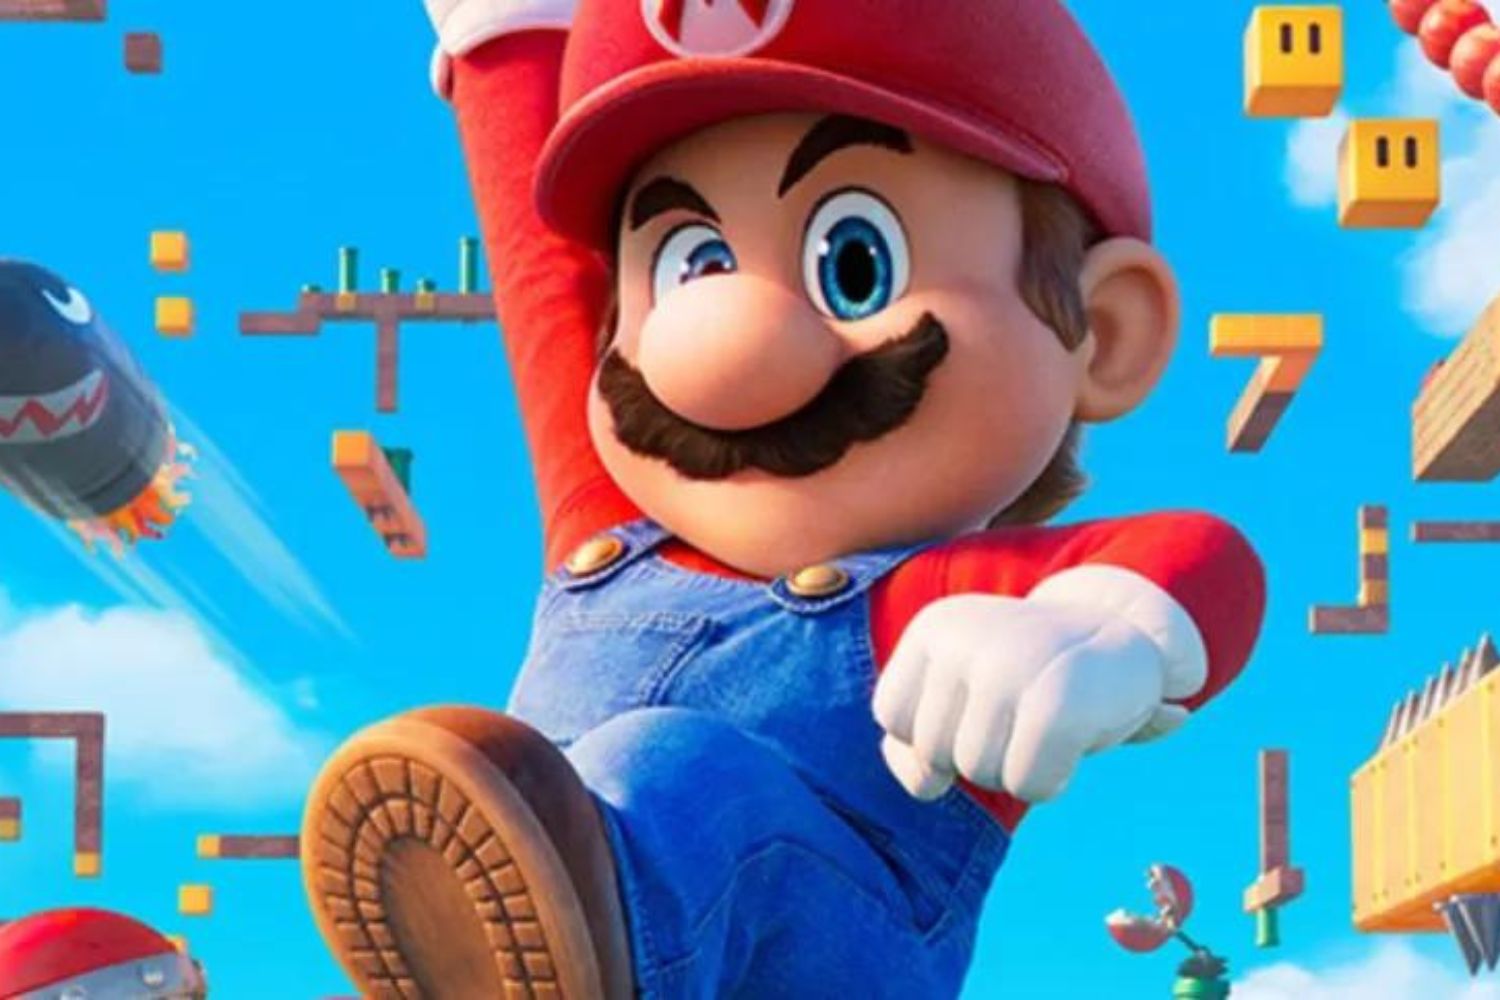 Super Mario Bros. O Filme é a longa-metragem mais assistido em